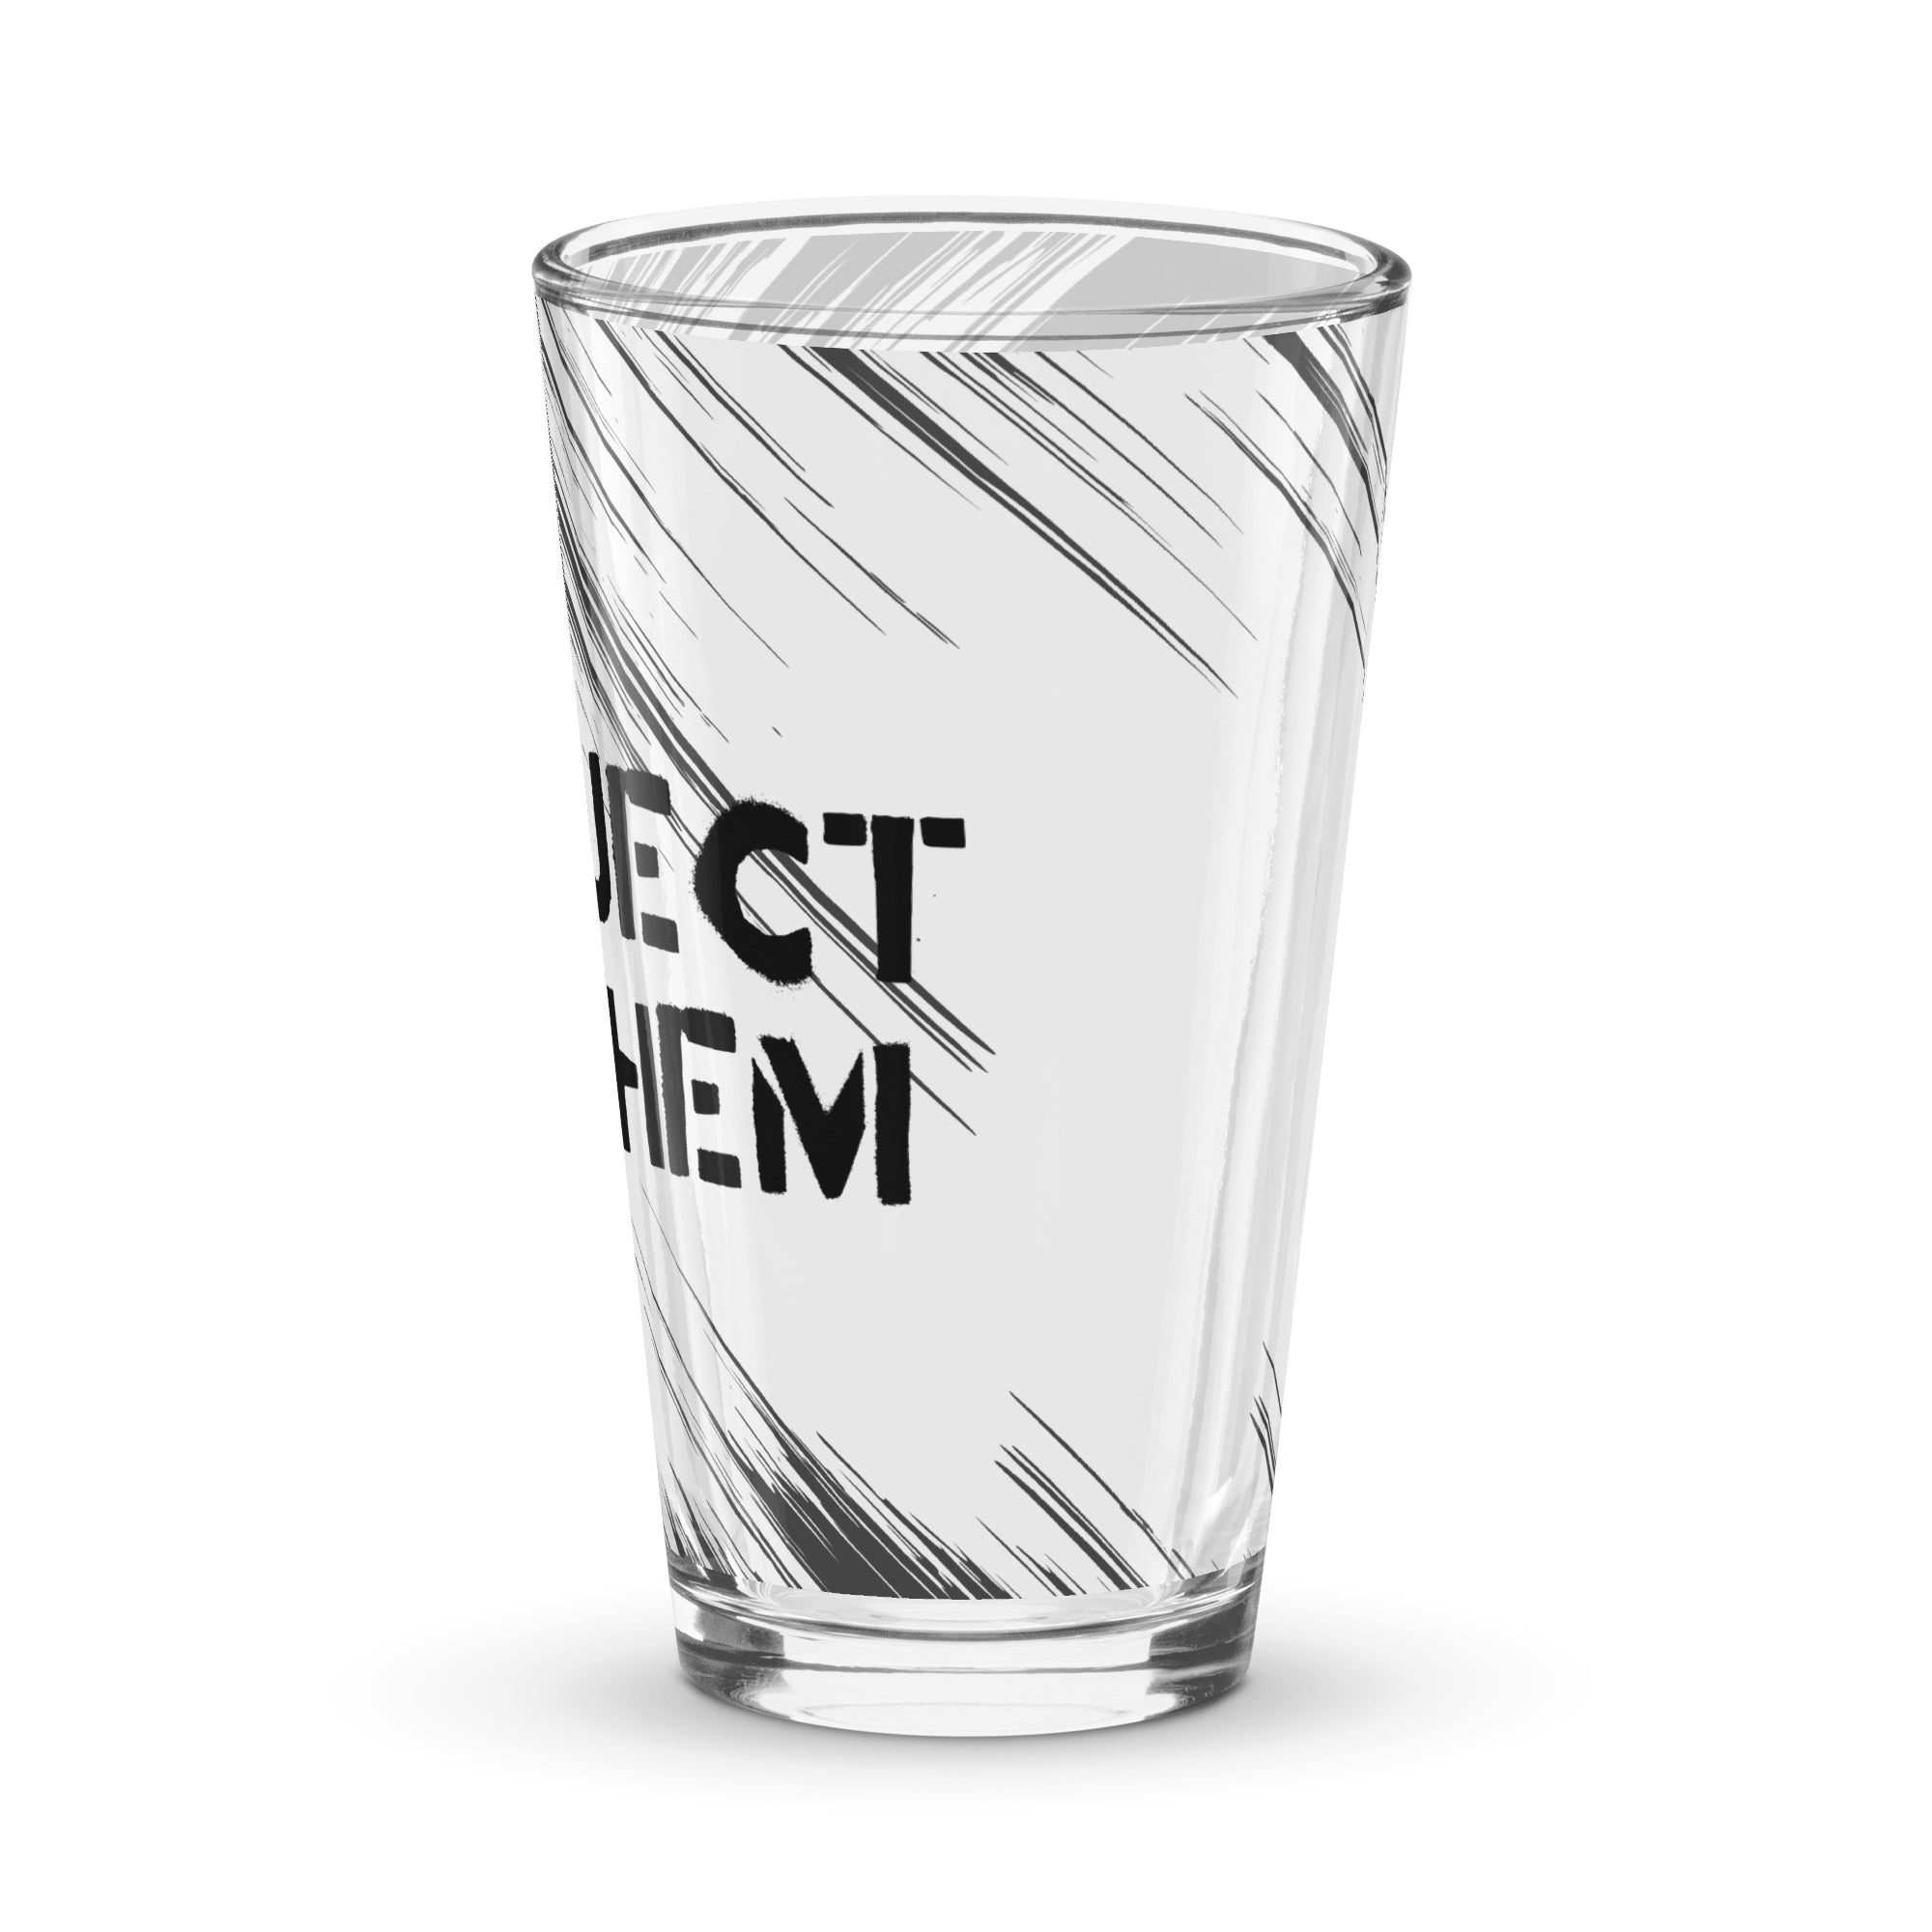 Project Mayhem  pint glass